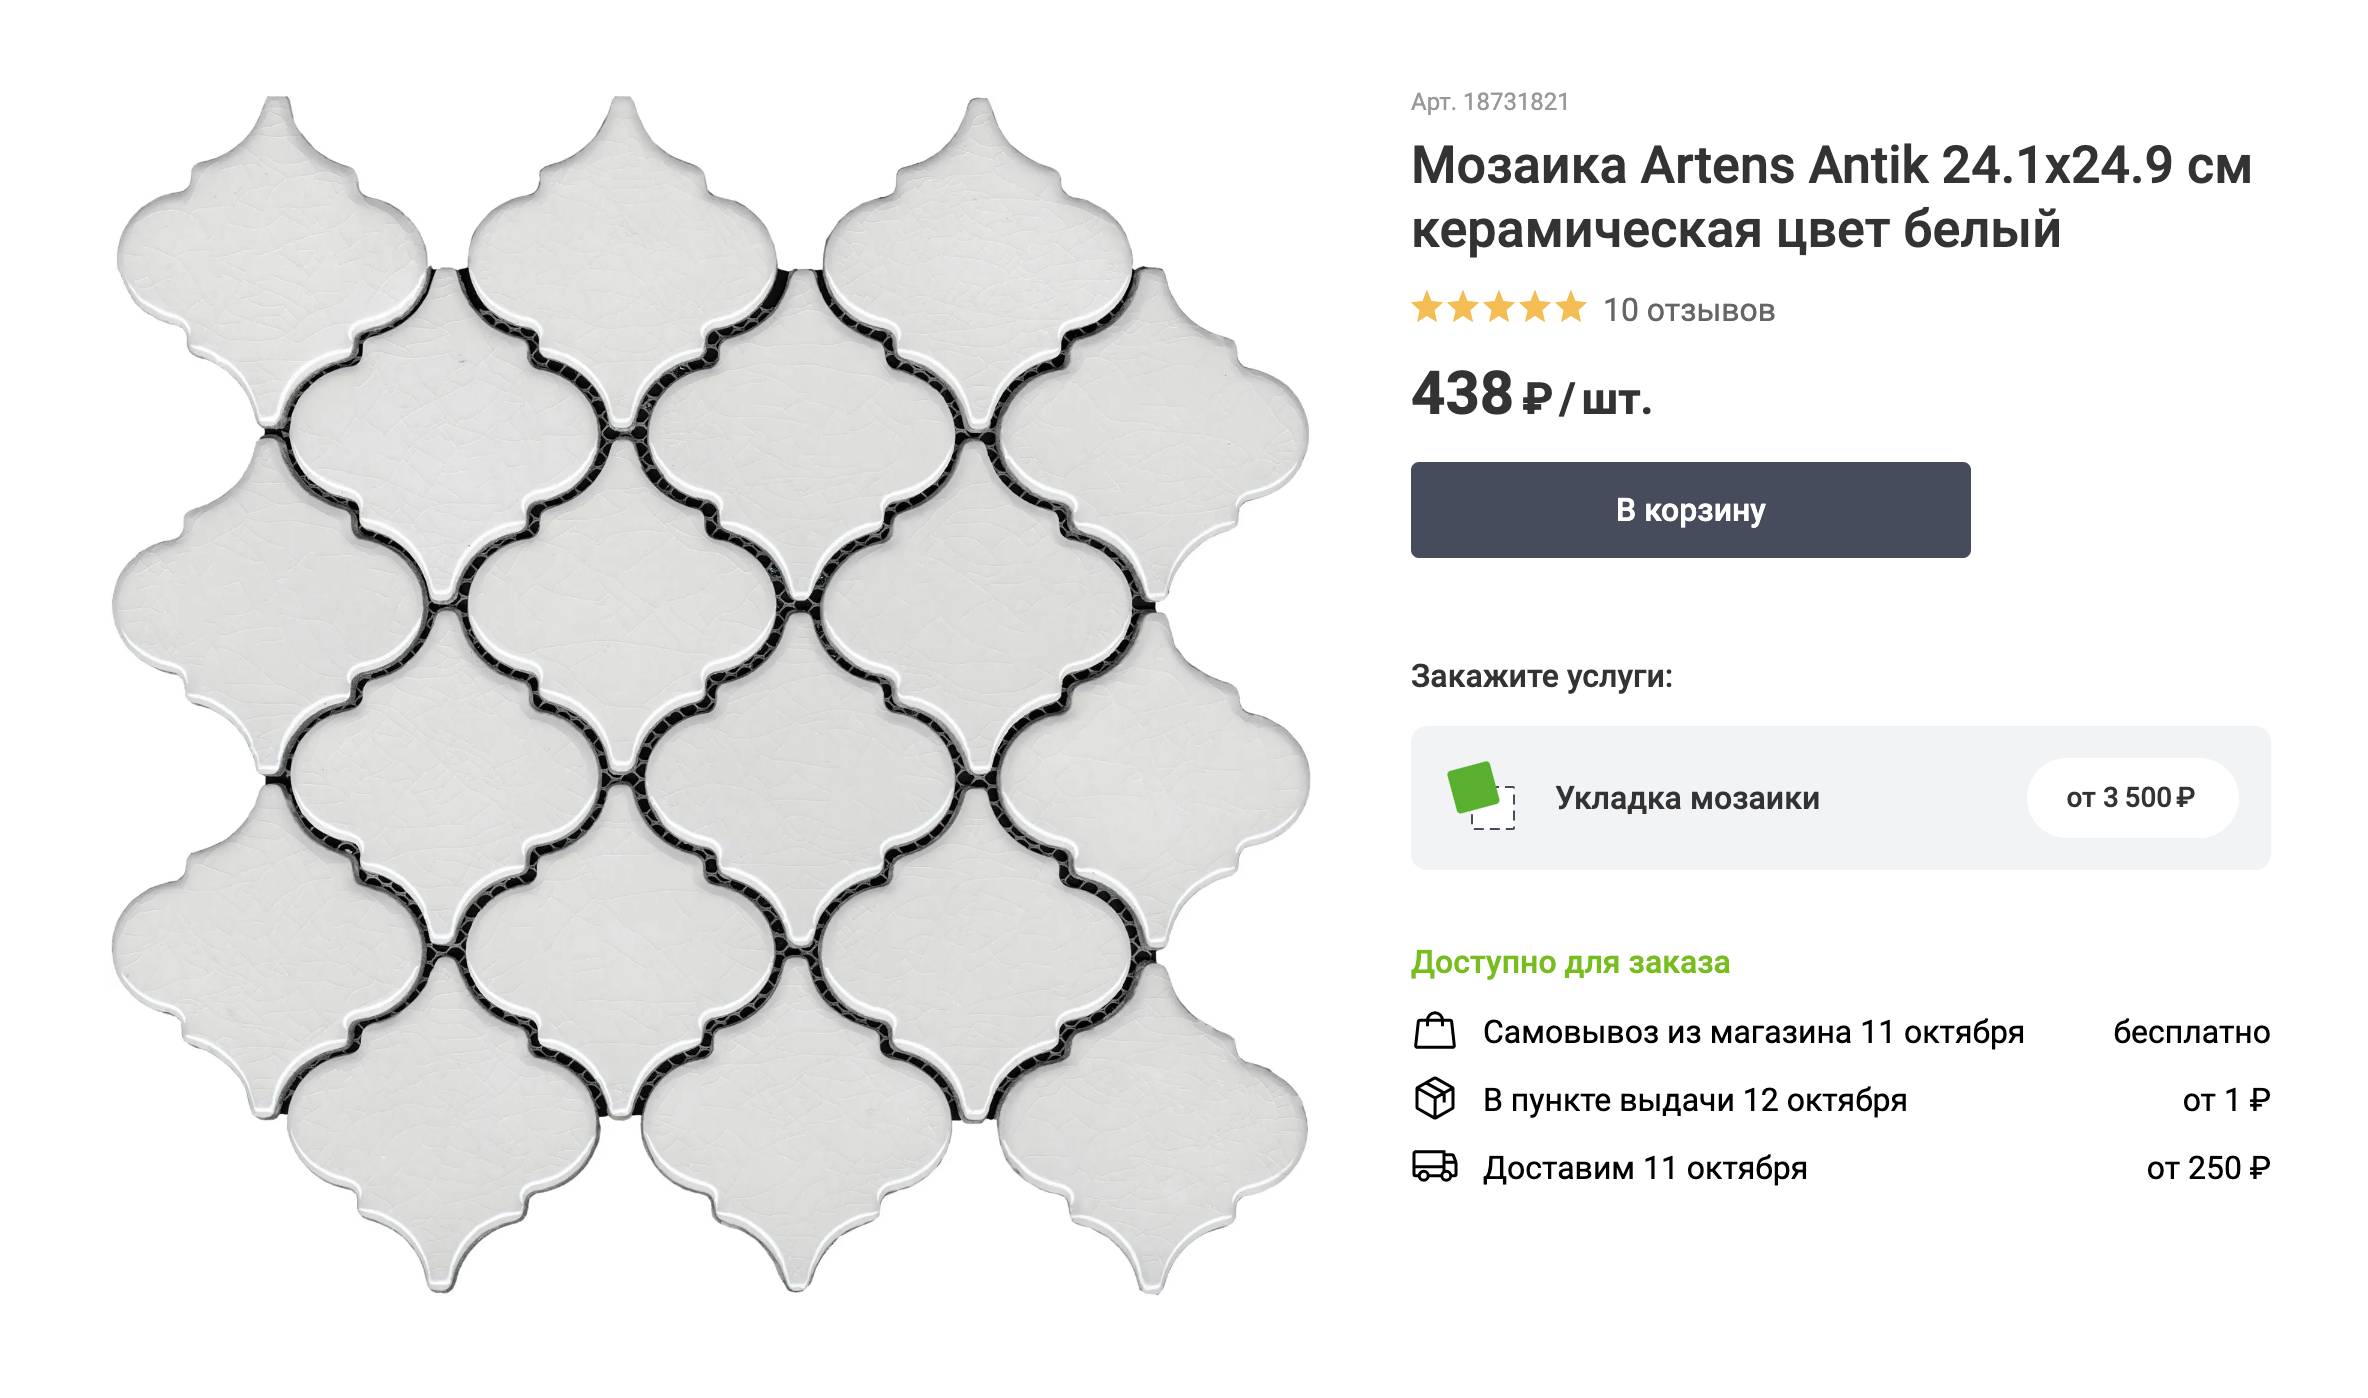 Керамическая мозаика в форме арабеска. Для простоты и скорости монтажа мозаику обычно продают пластинами на сетчатой или бумажной основе. Источник: leroymerlin.ru